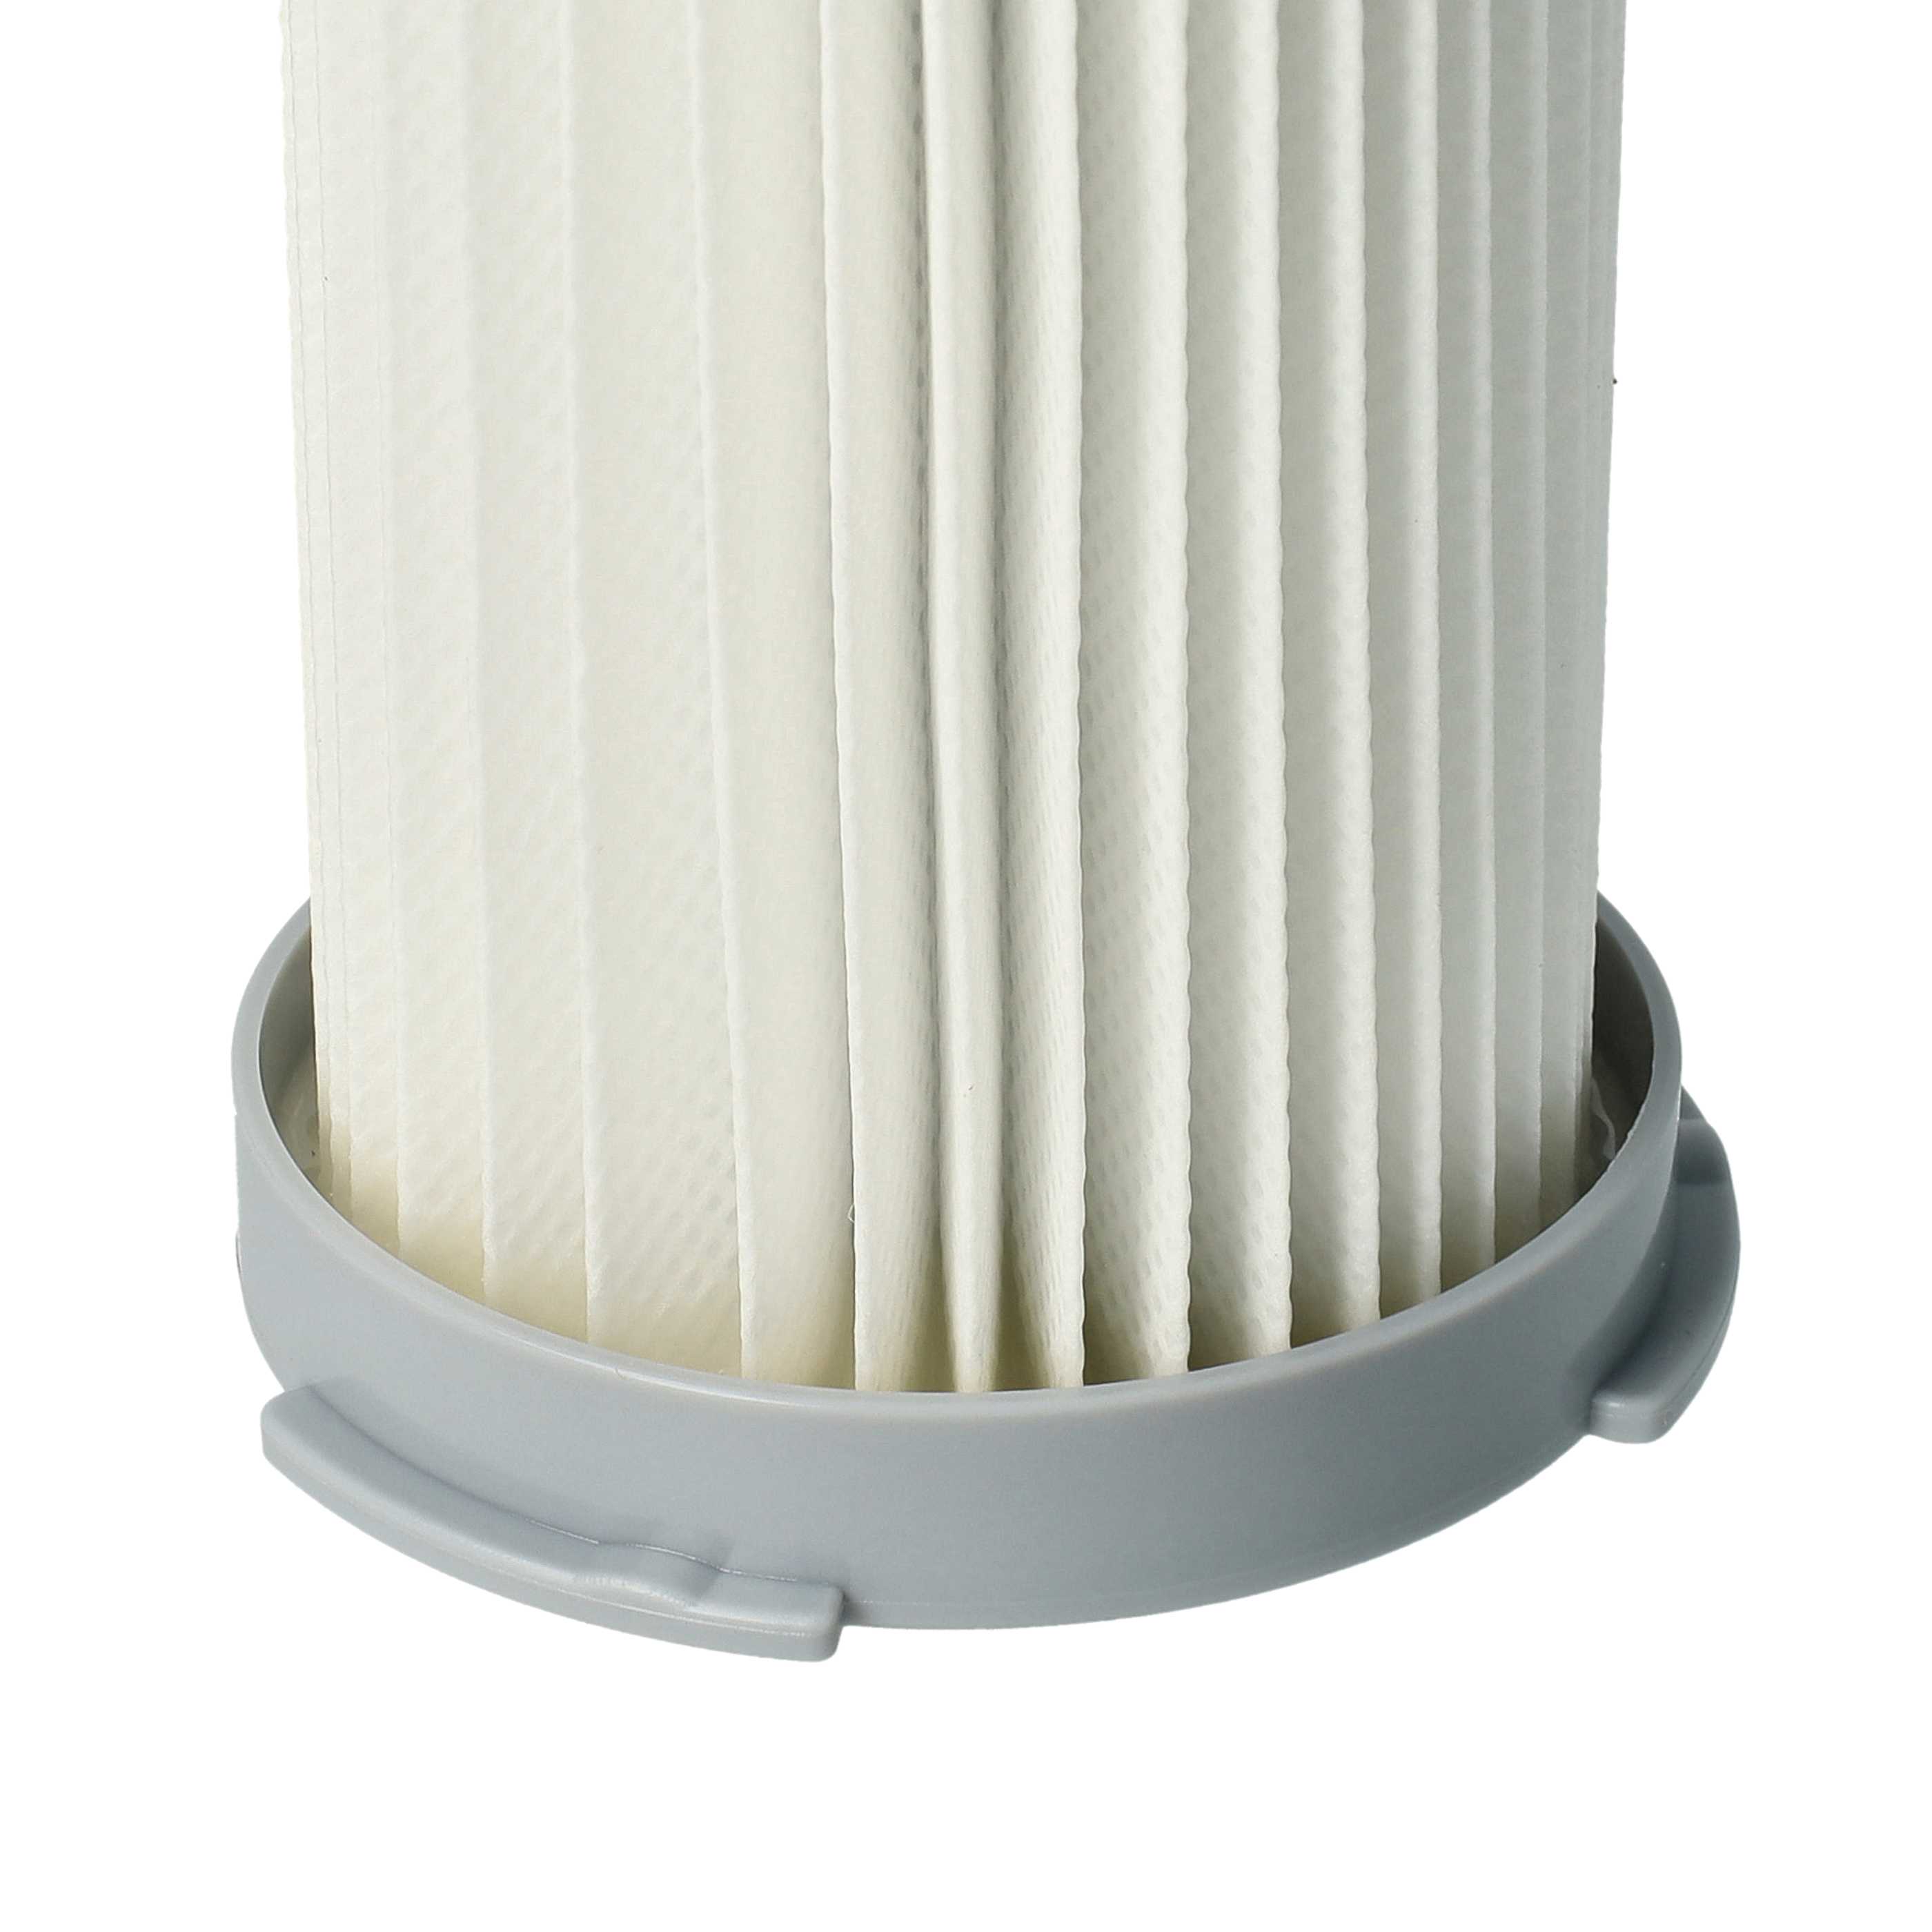 Filtro sostituisce Electrolux EF75B per aspirapolvere - filtro aria di scarico